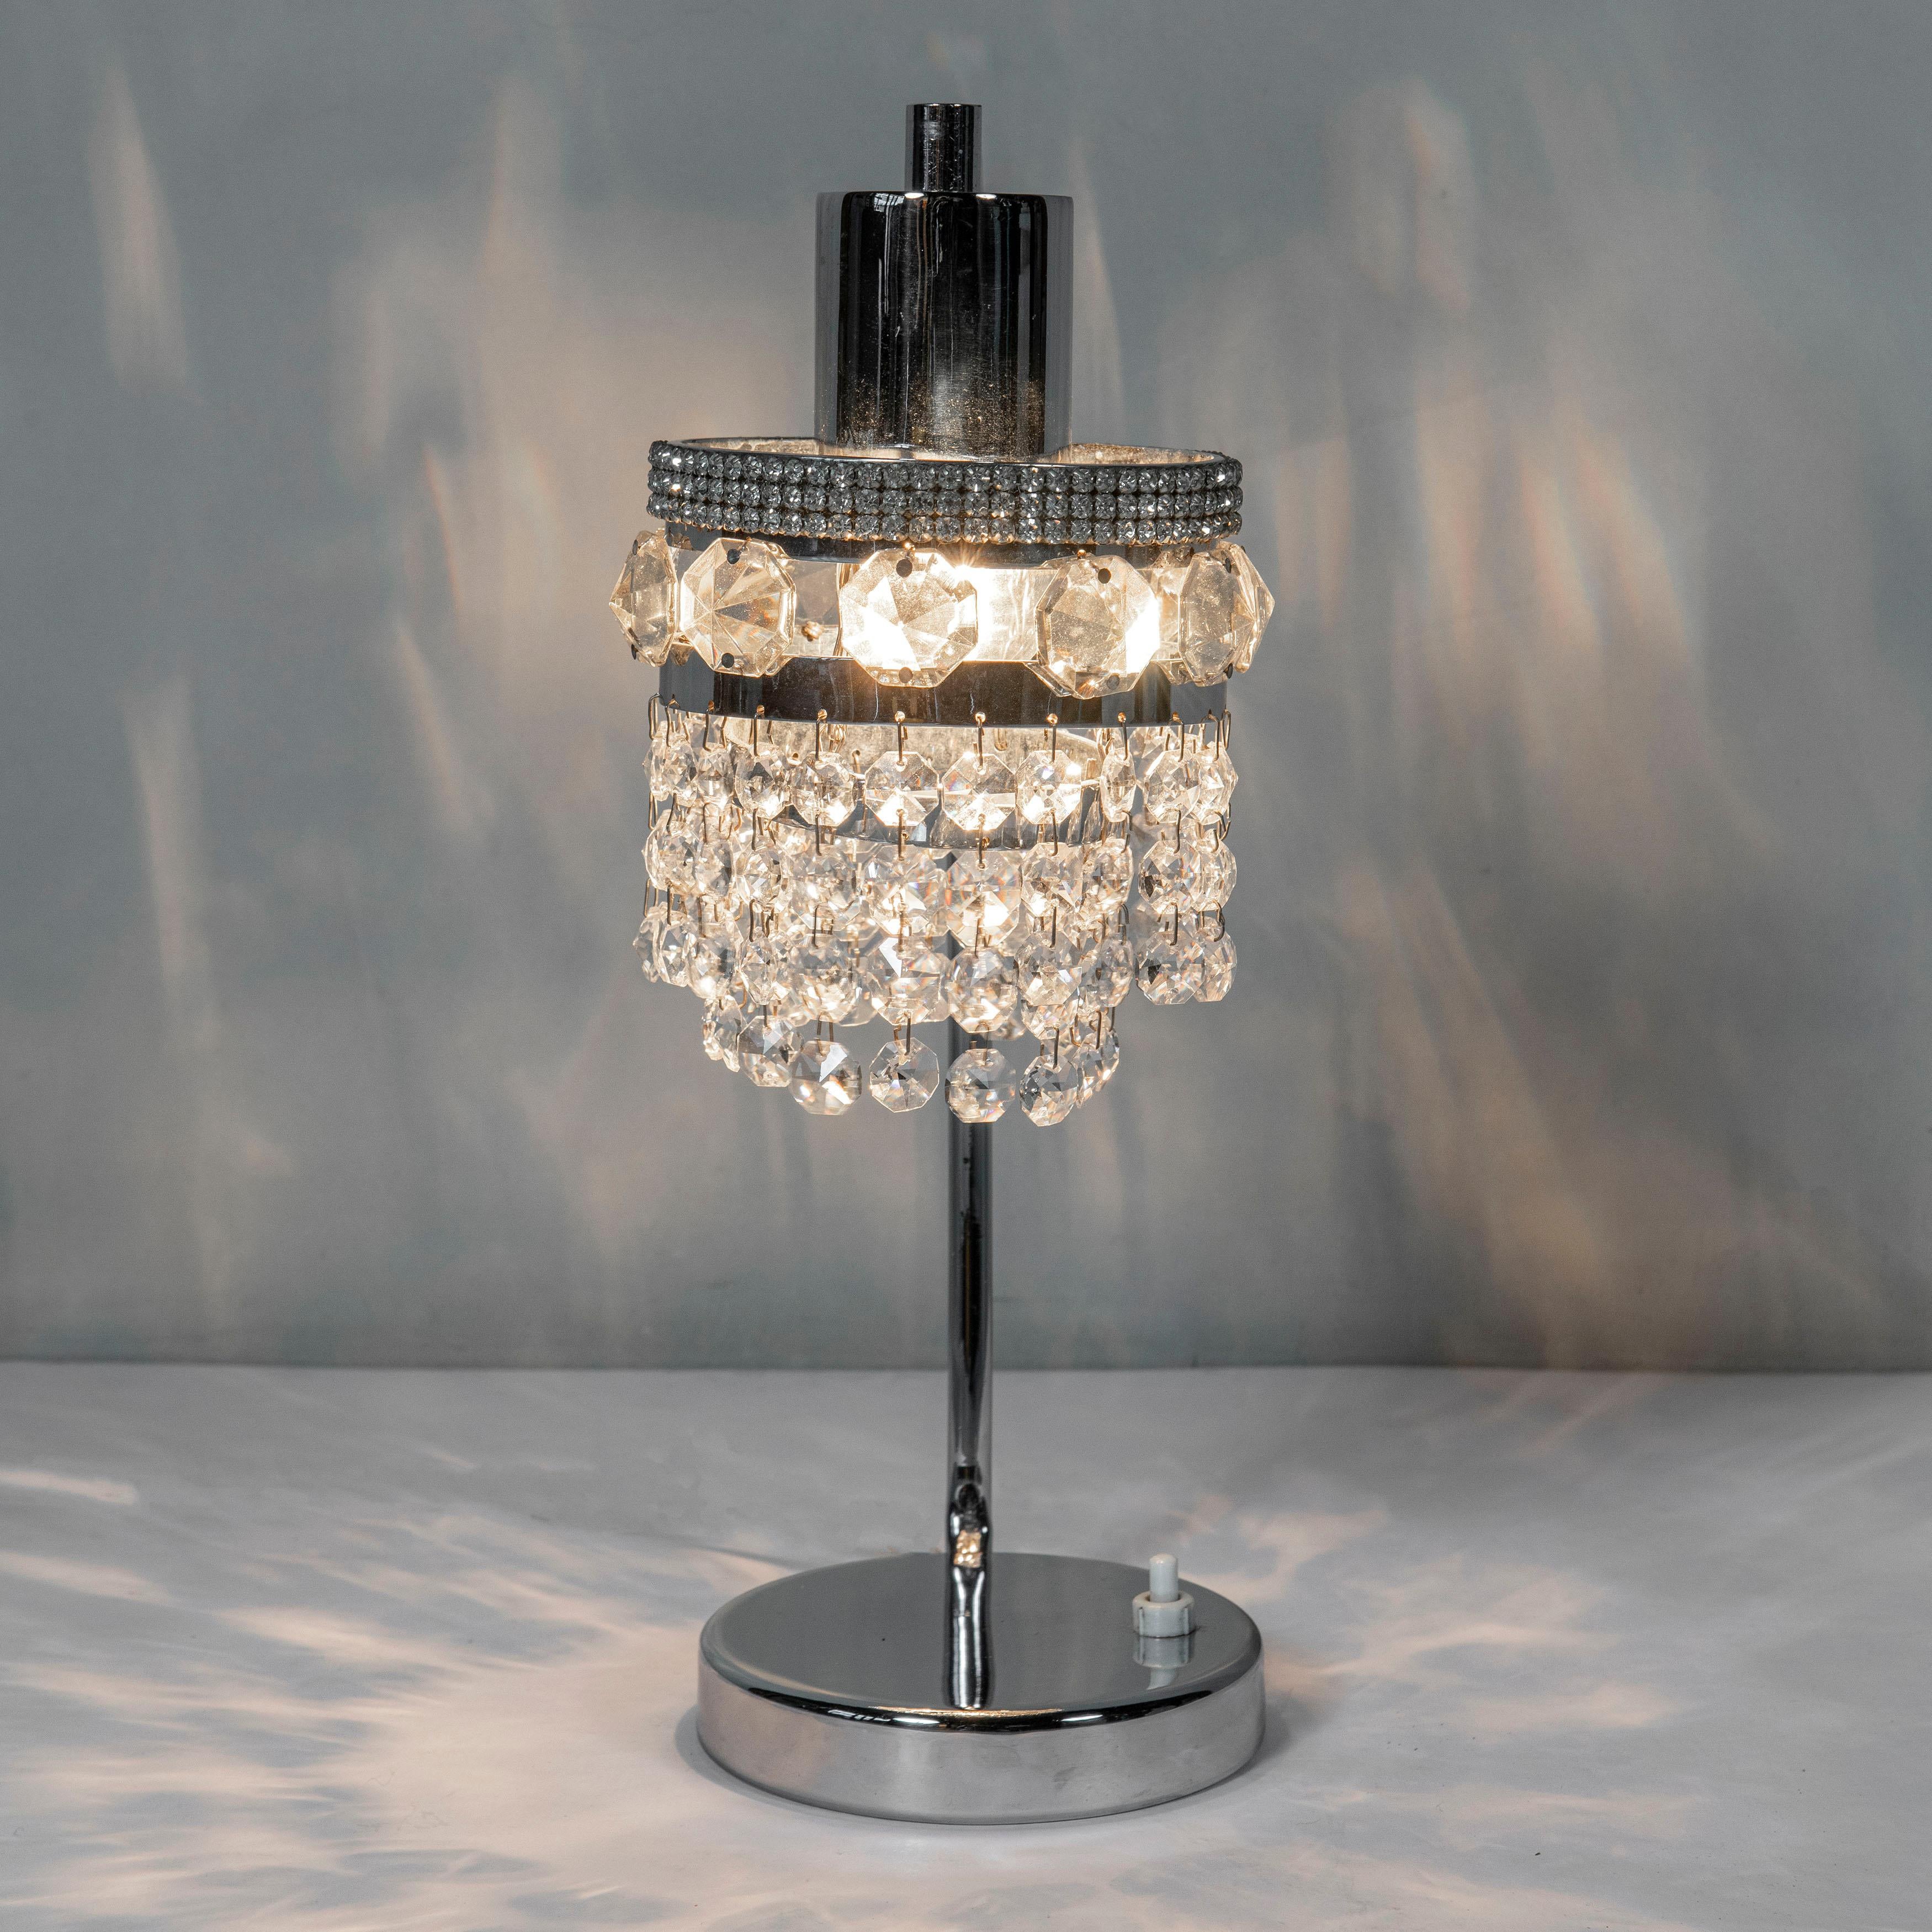 Lampe de table en métal chromé et verre de cristal. Autriche, vers 1960.
Attribué à Bakalowits & Söhne.